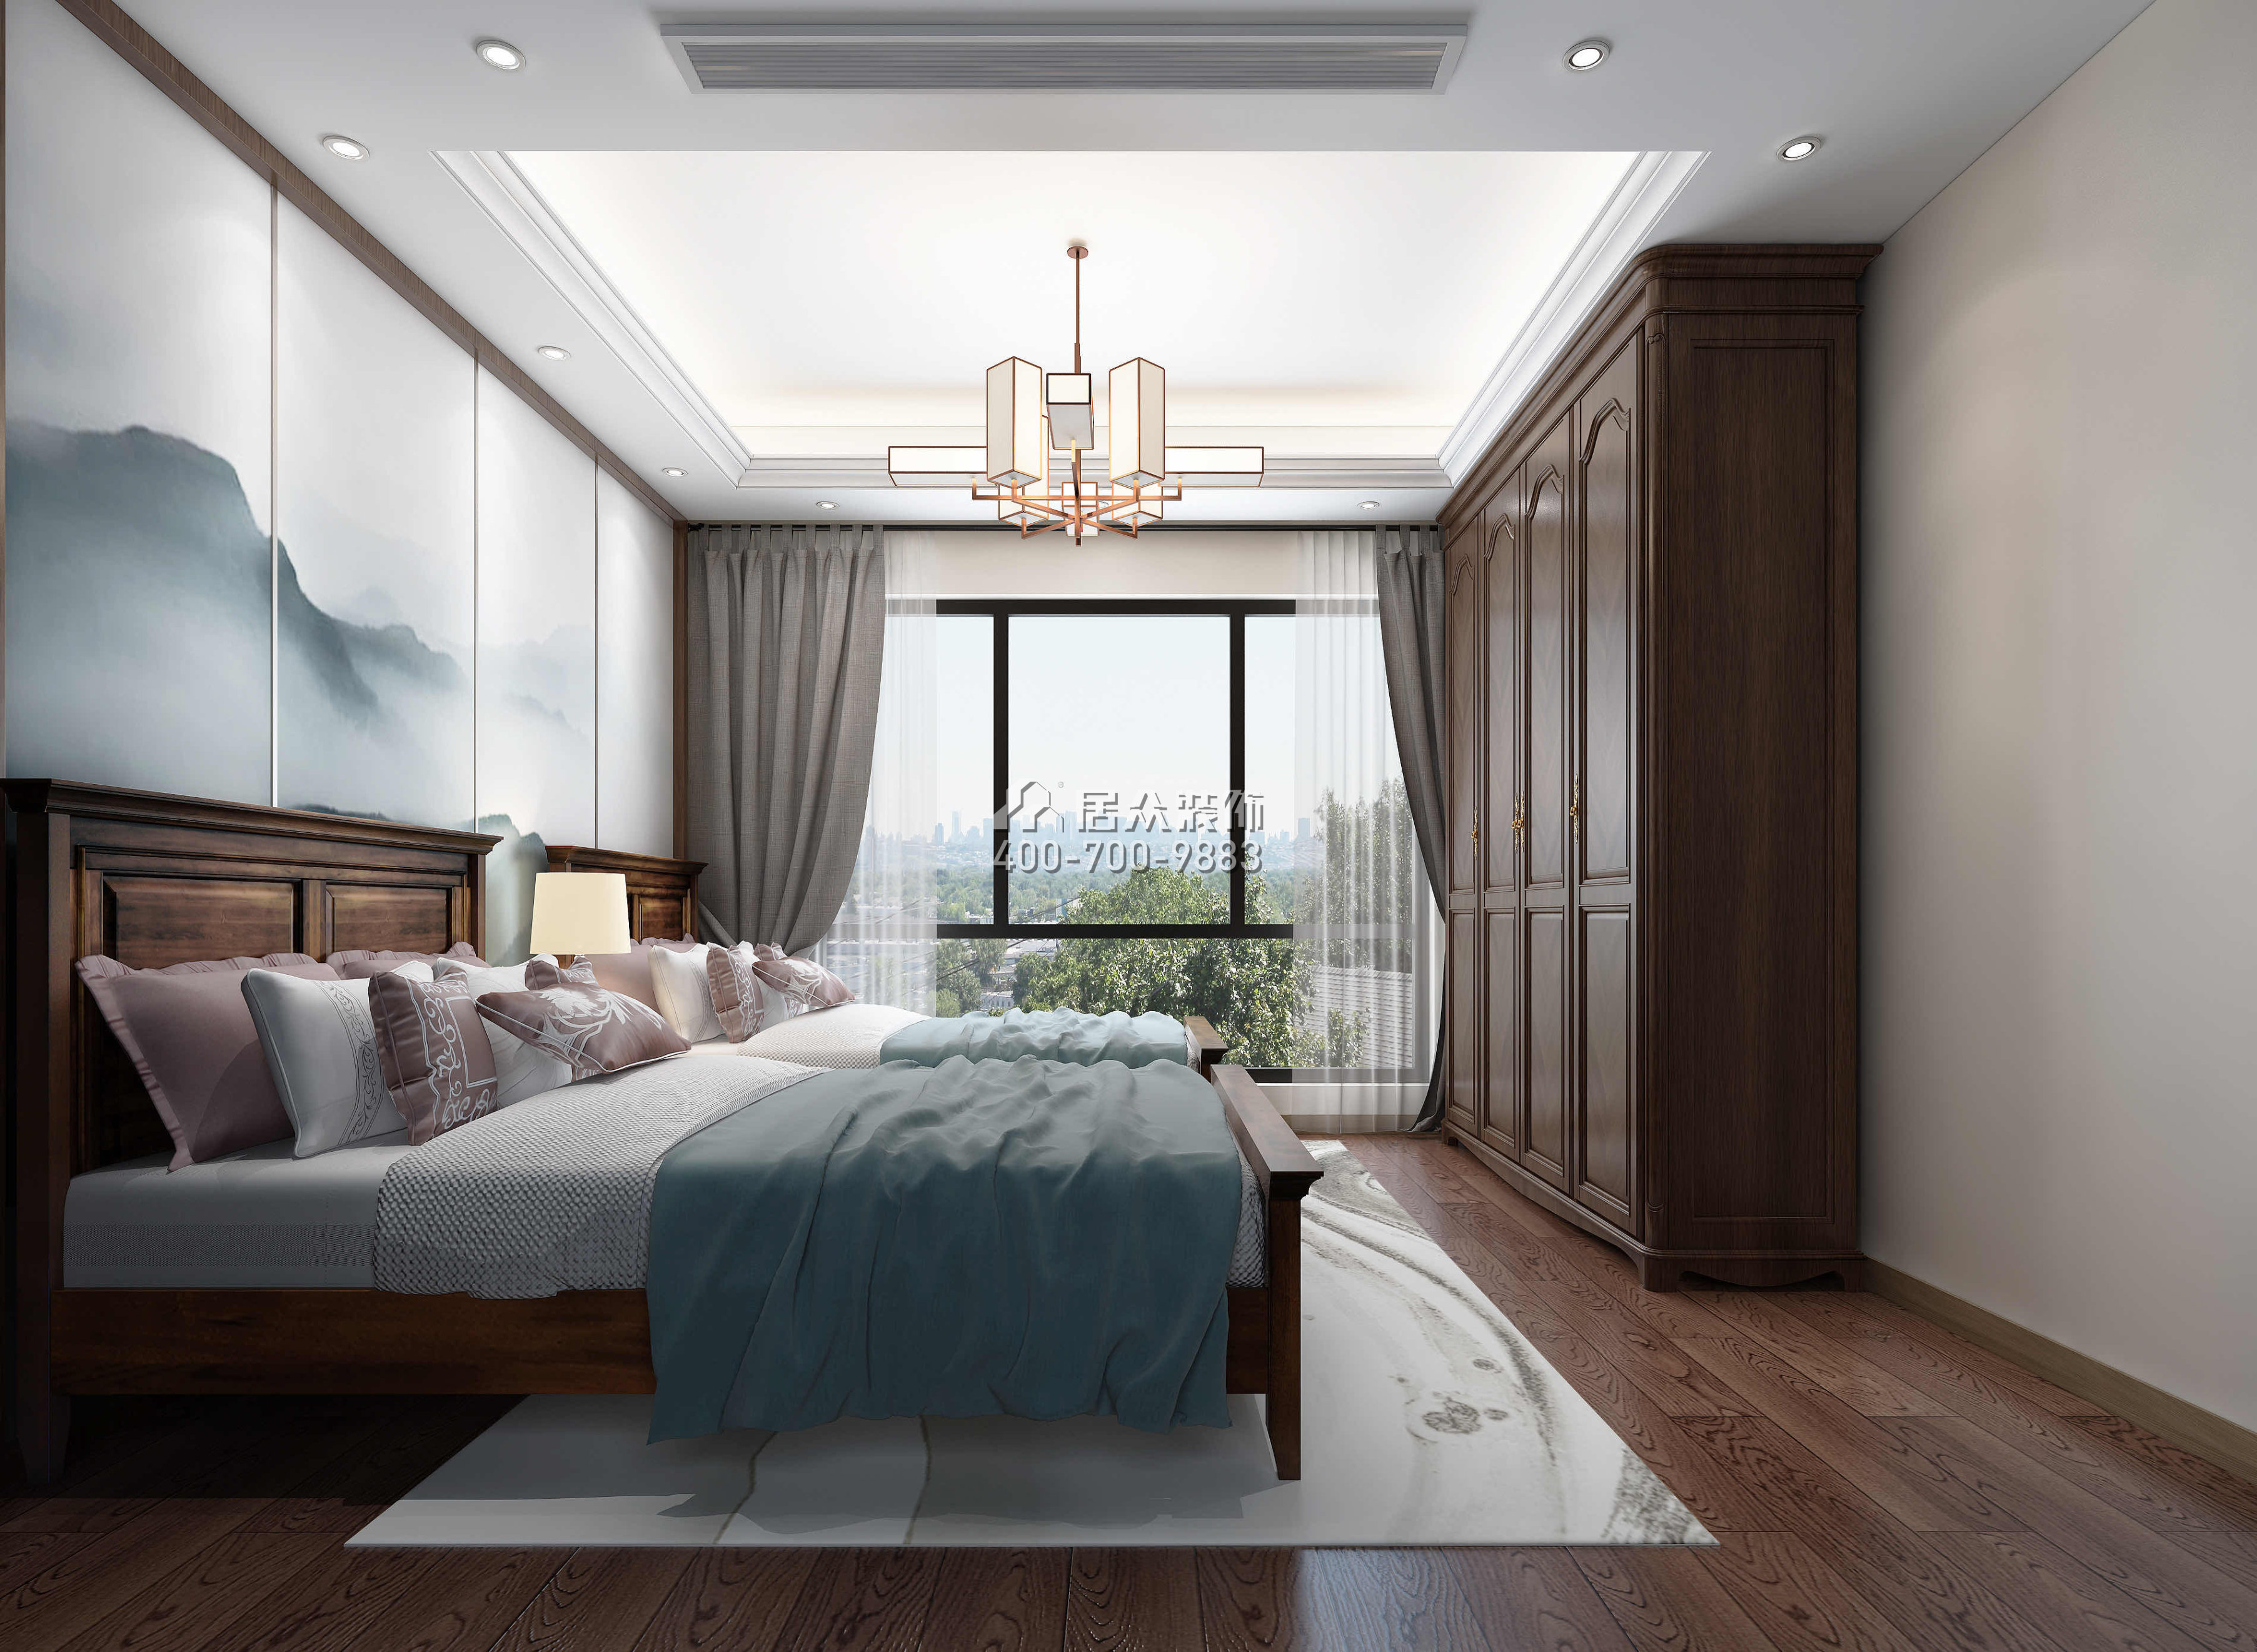 华发新城480平方米中式风格别墅户型卧室装修效果图